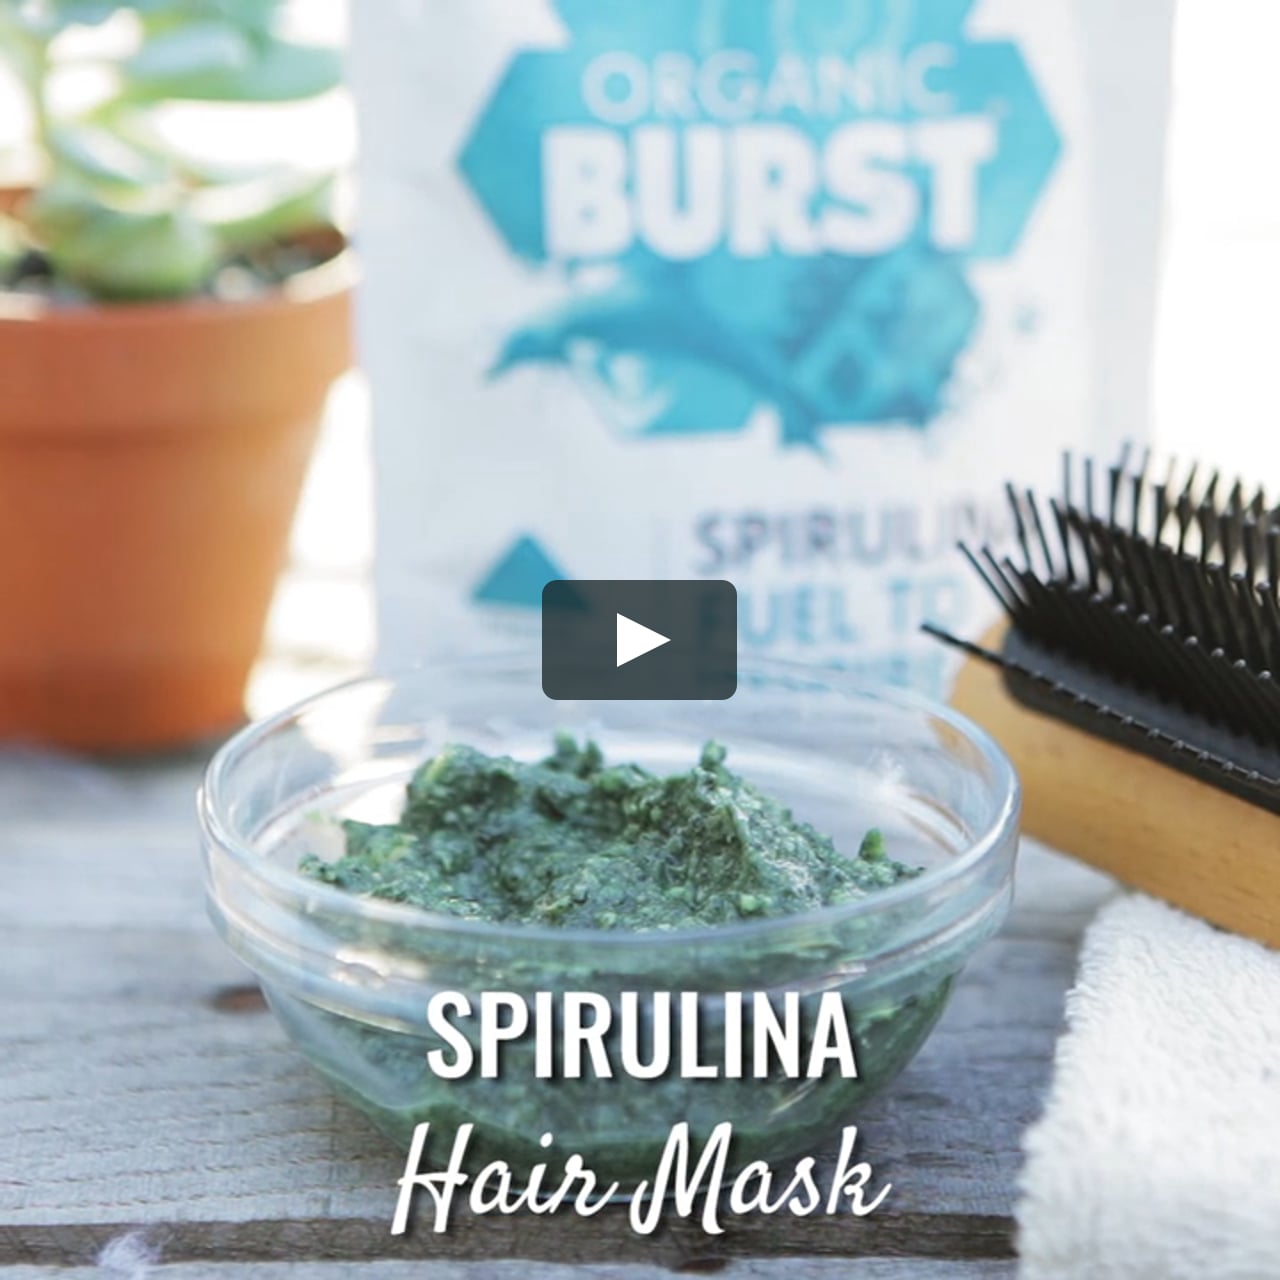 Spirulina Hair Mask on Vimeo